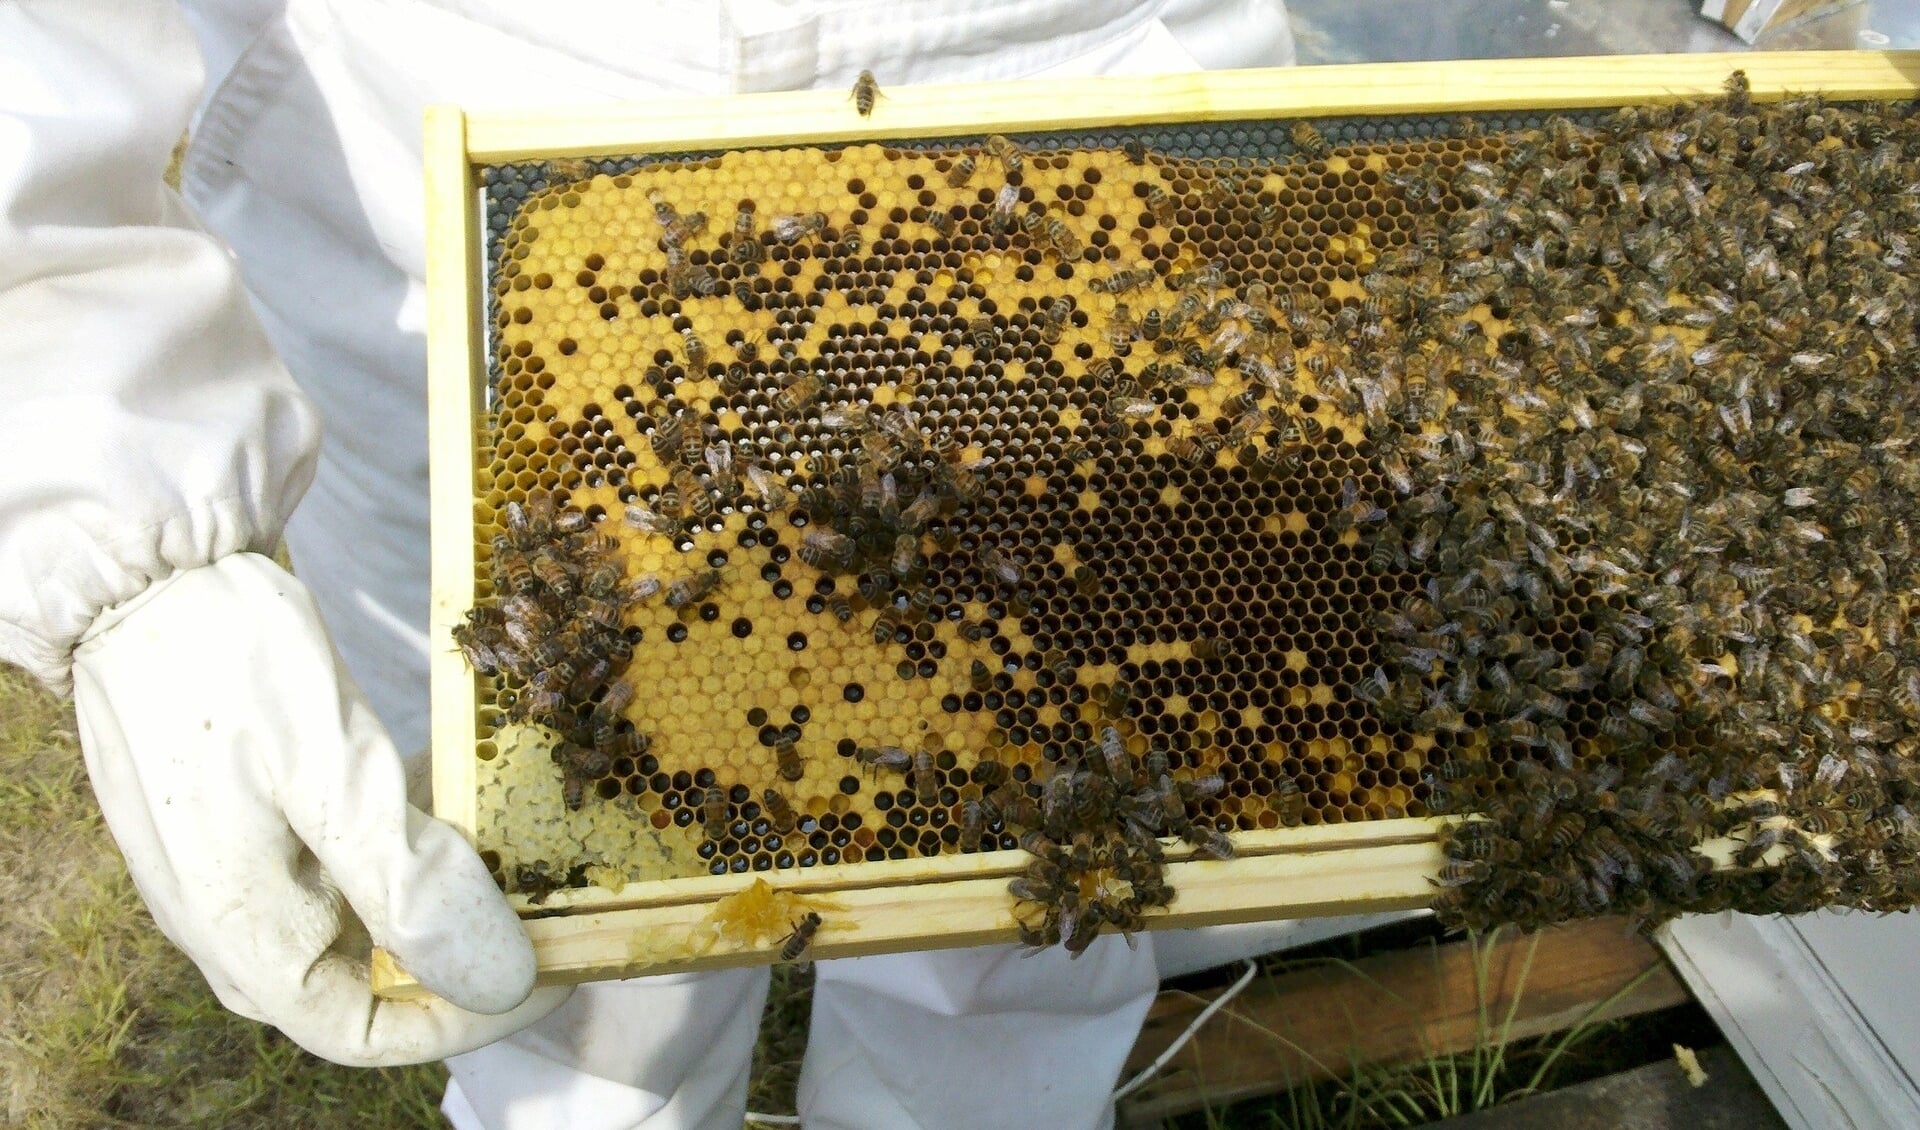 Imker met bijenraat.